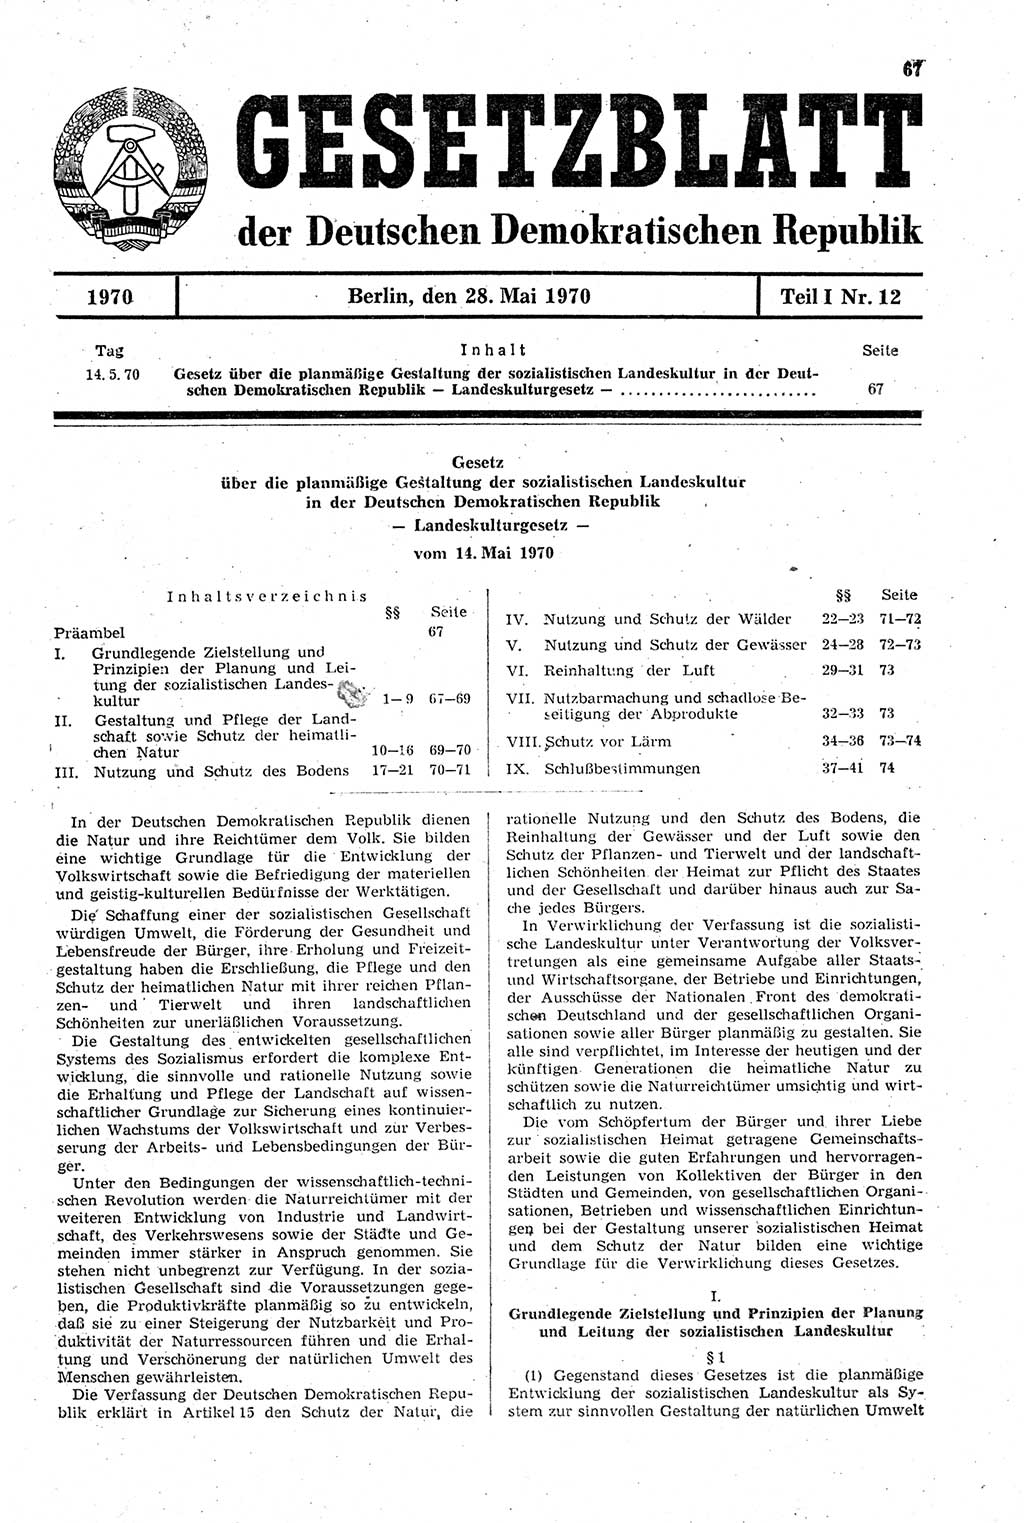 Gesetzblatt (GBl.) der Deutschen Demokratischen Republik (DDR) Teil Ⅰ 1970, Seite 67 (GBl. DDR Ⅰ 1970, S. 67)